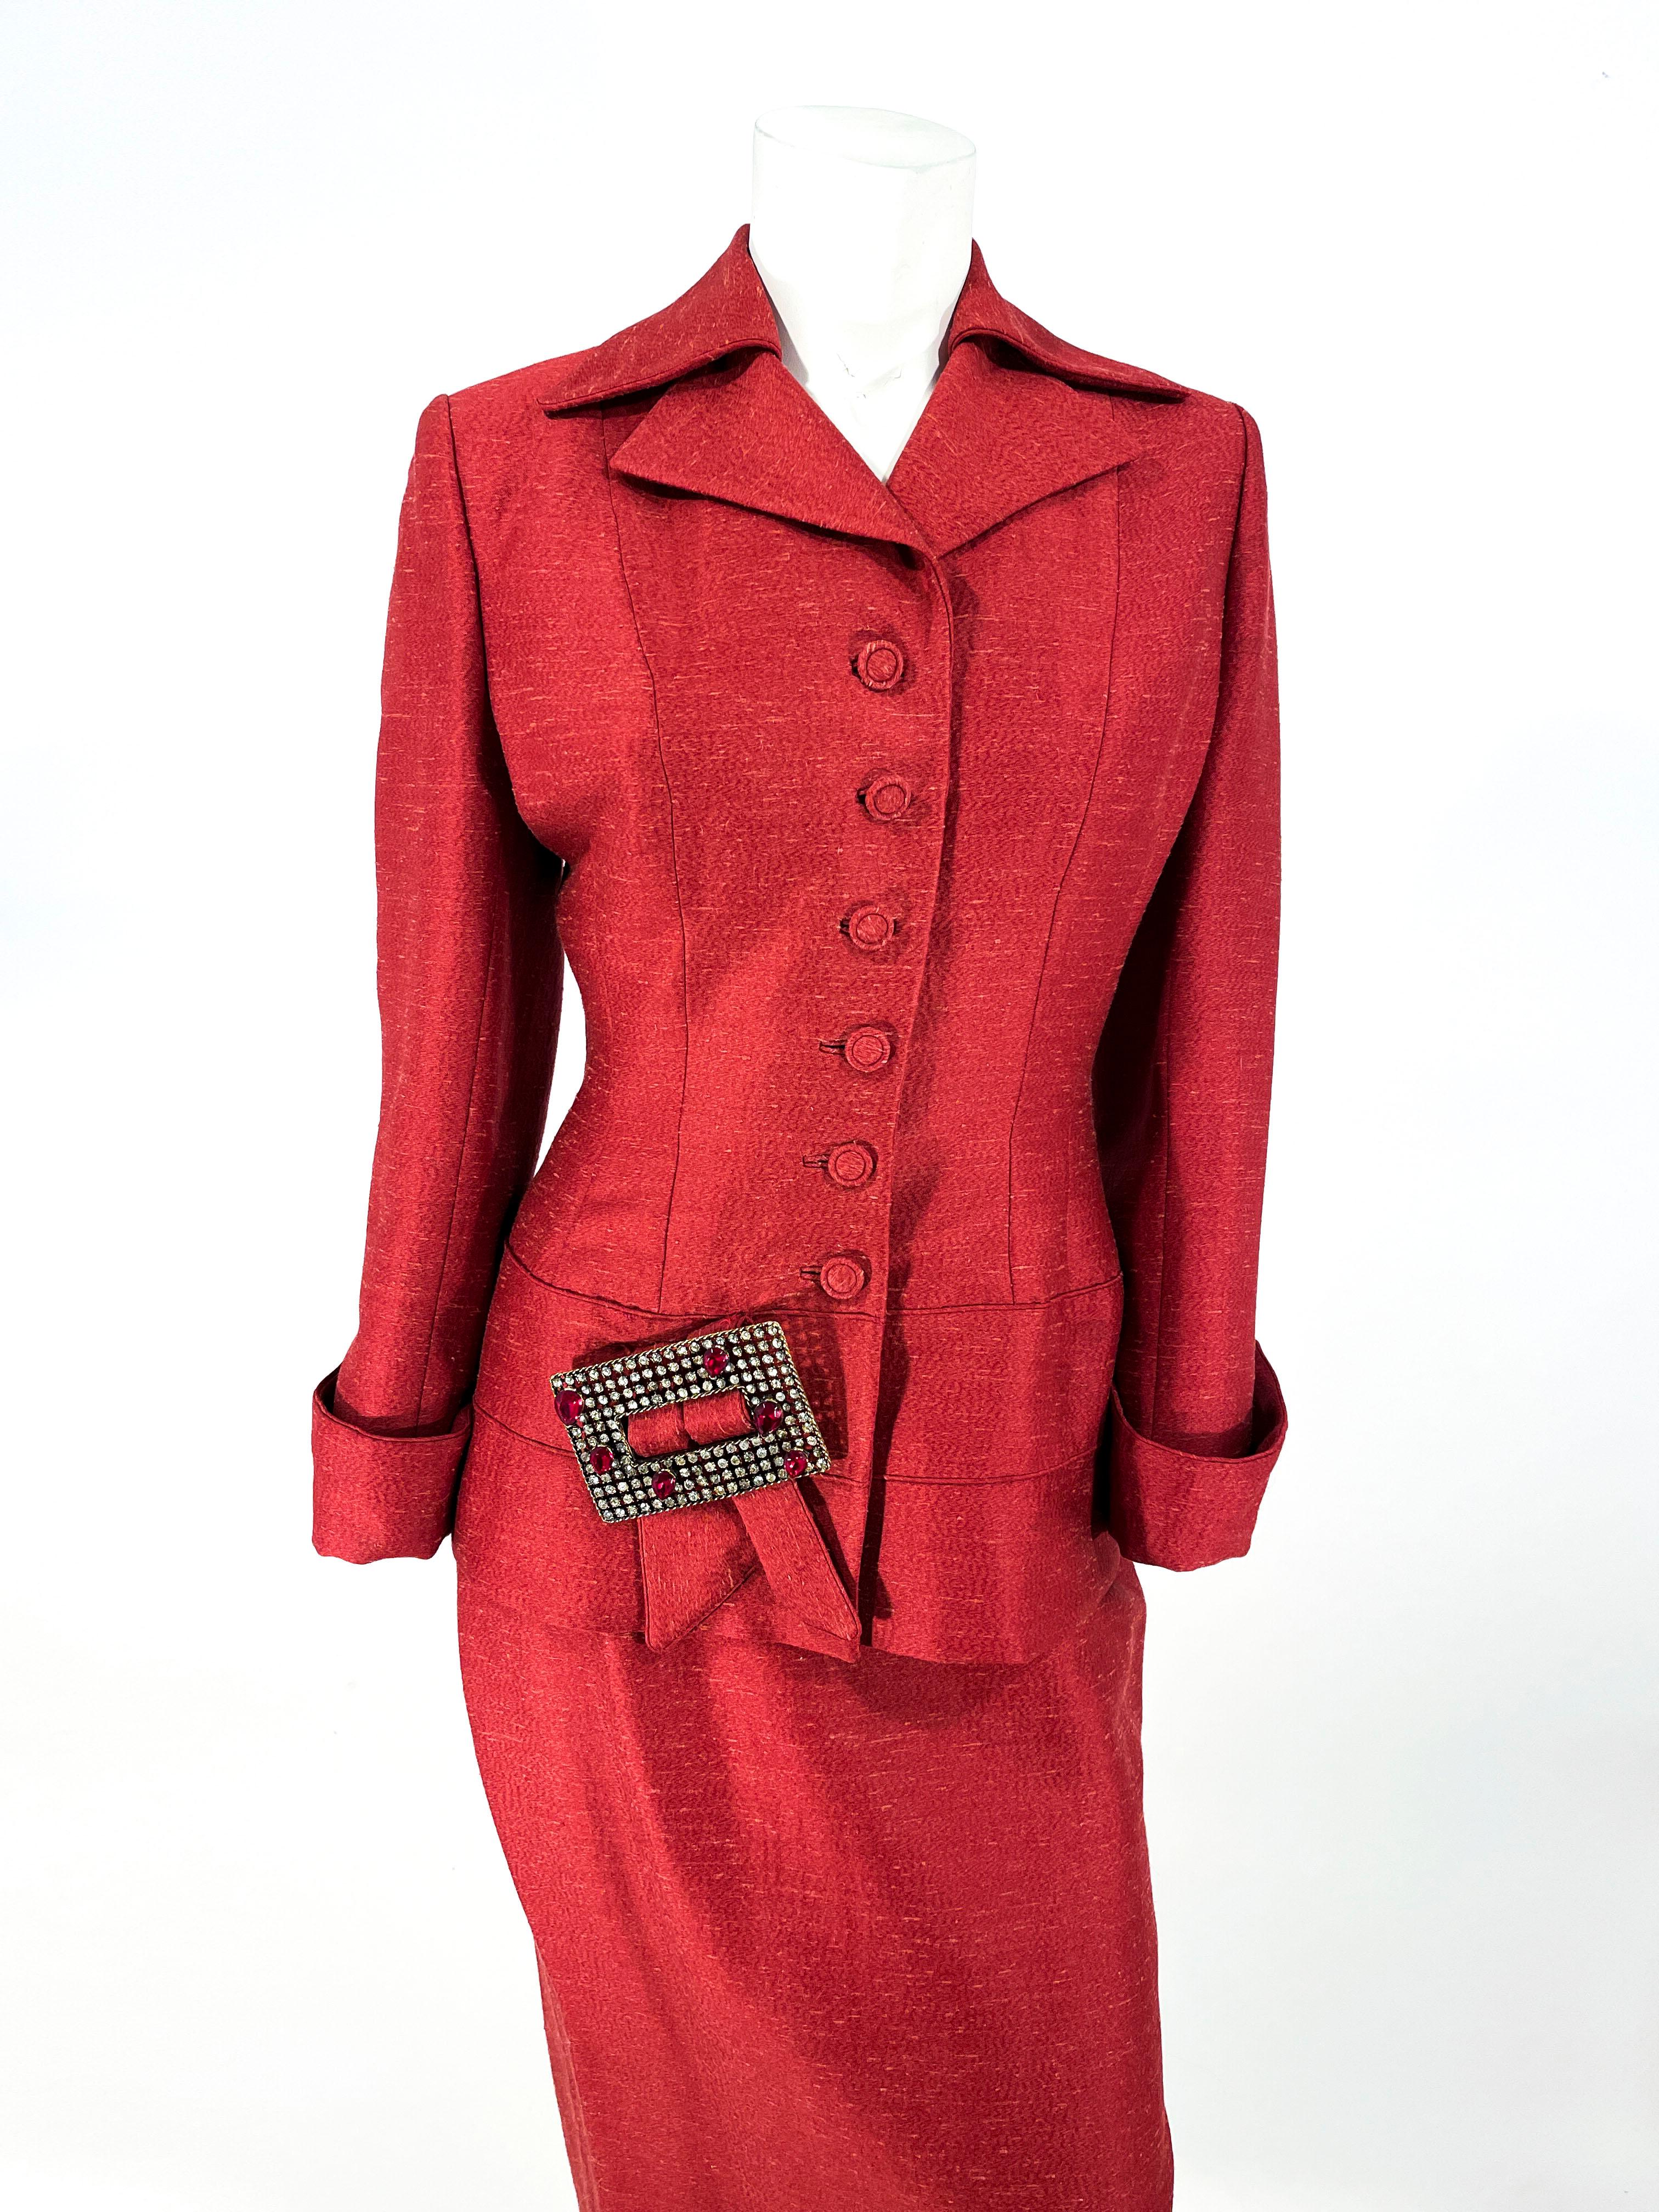 Ensemble veste et jupe en laine et soie mélangées Red Lilli Ann des années 1950. La veste de costume est dotée d'un col pointu, d'un revers à cran, de boutons recouverts de motifs, de boutonnières encastrées, d'une taille de guêpe ajustée et